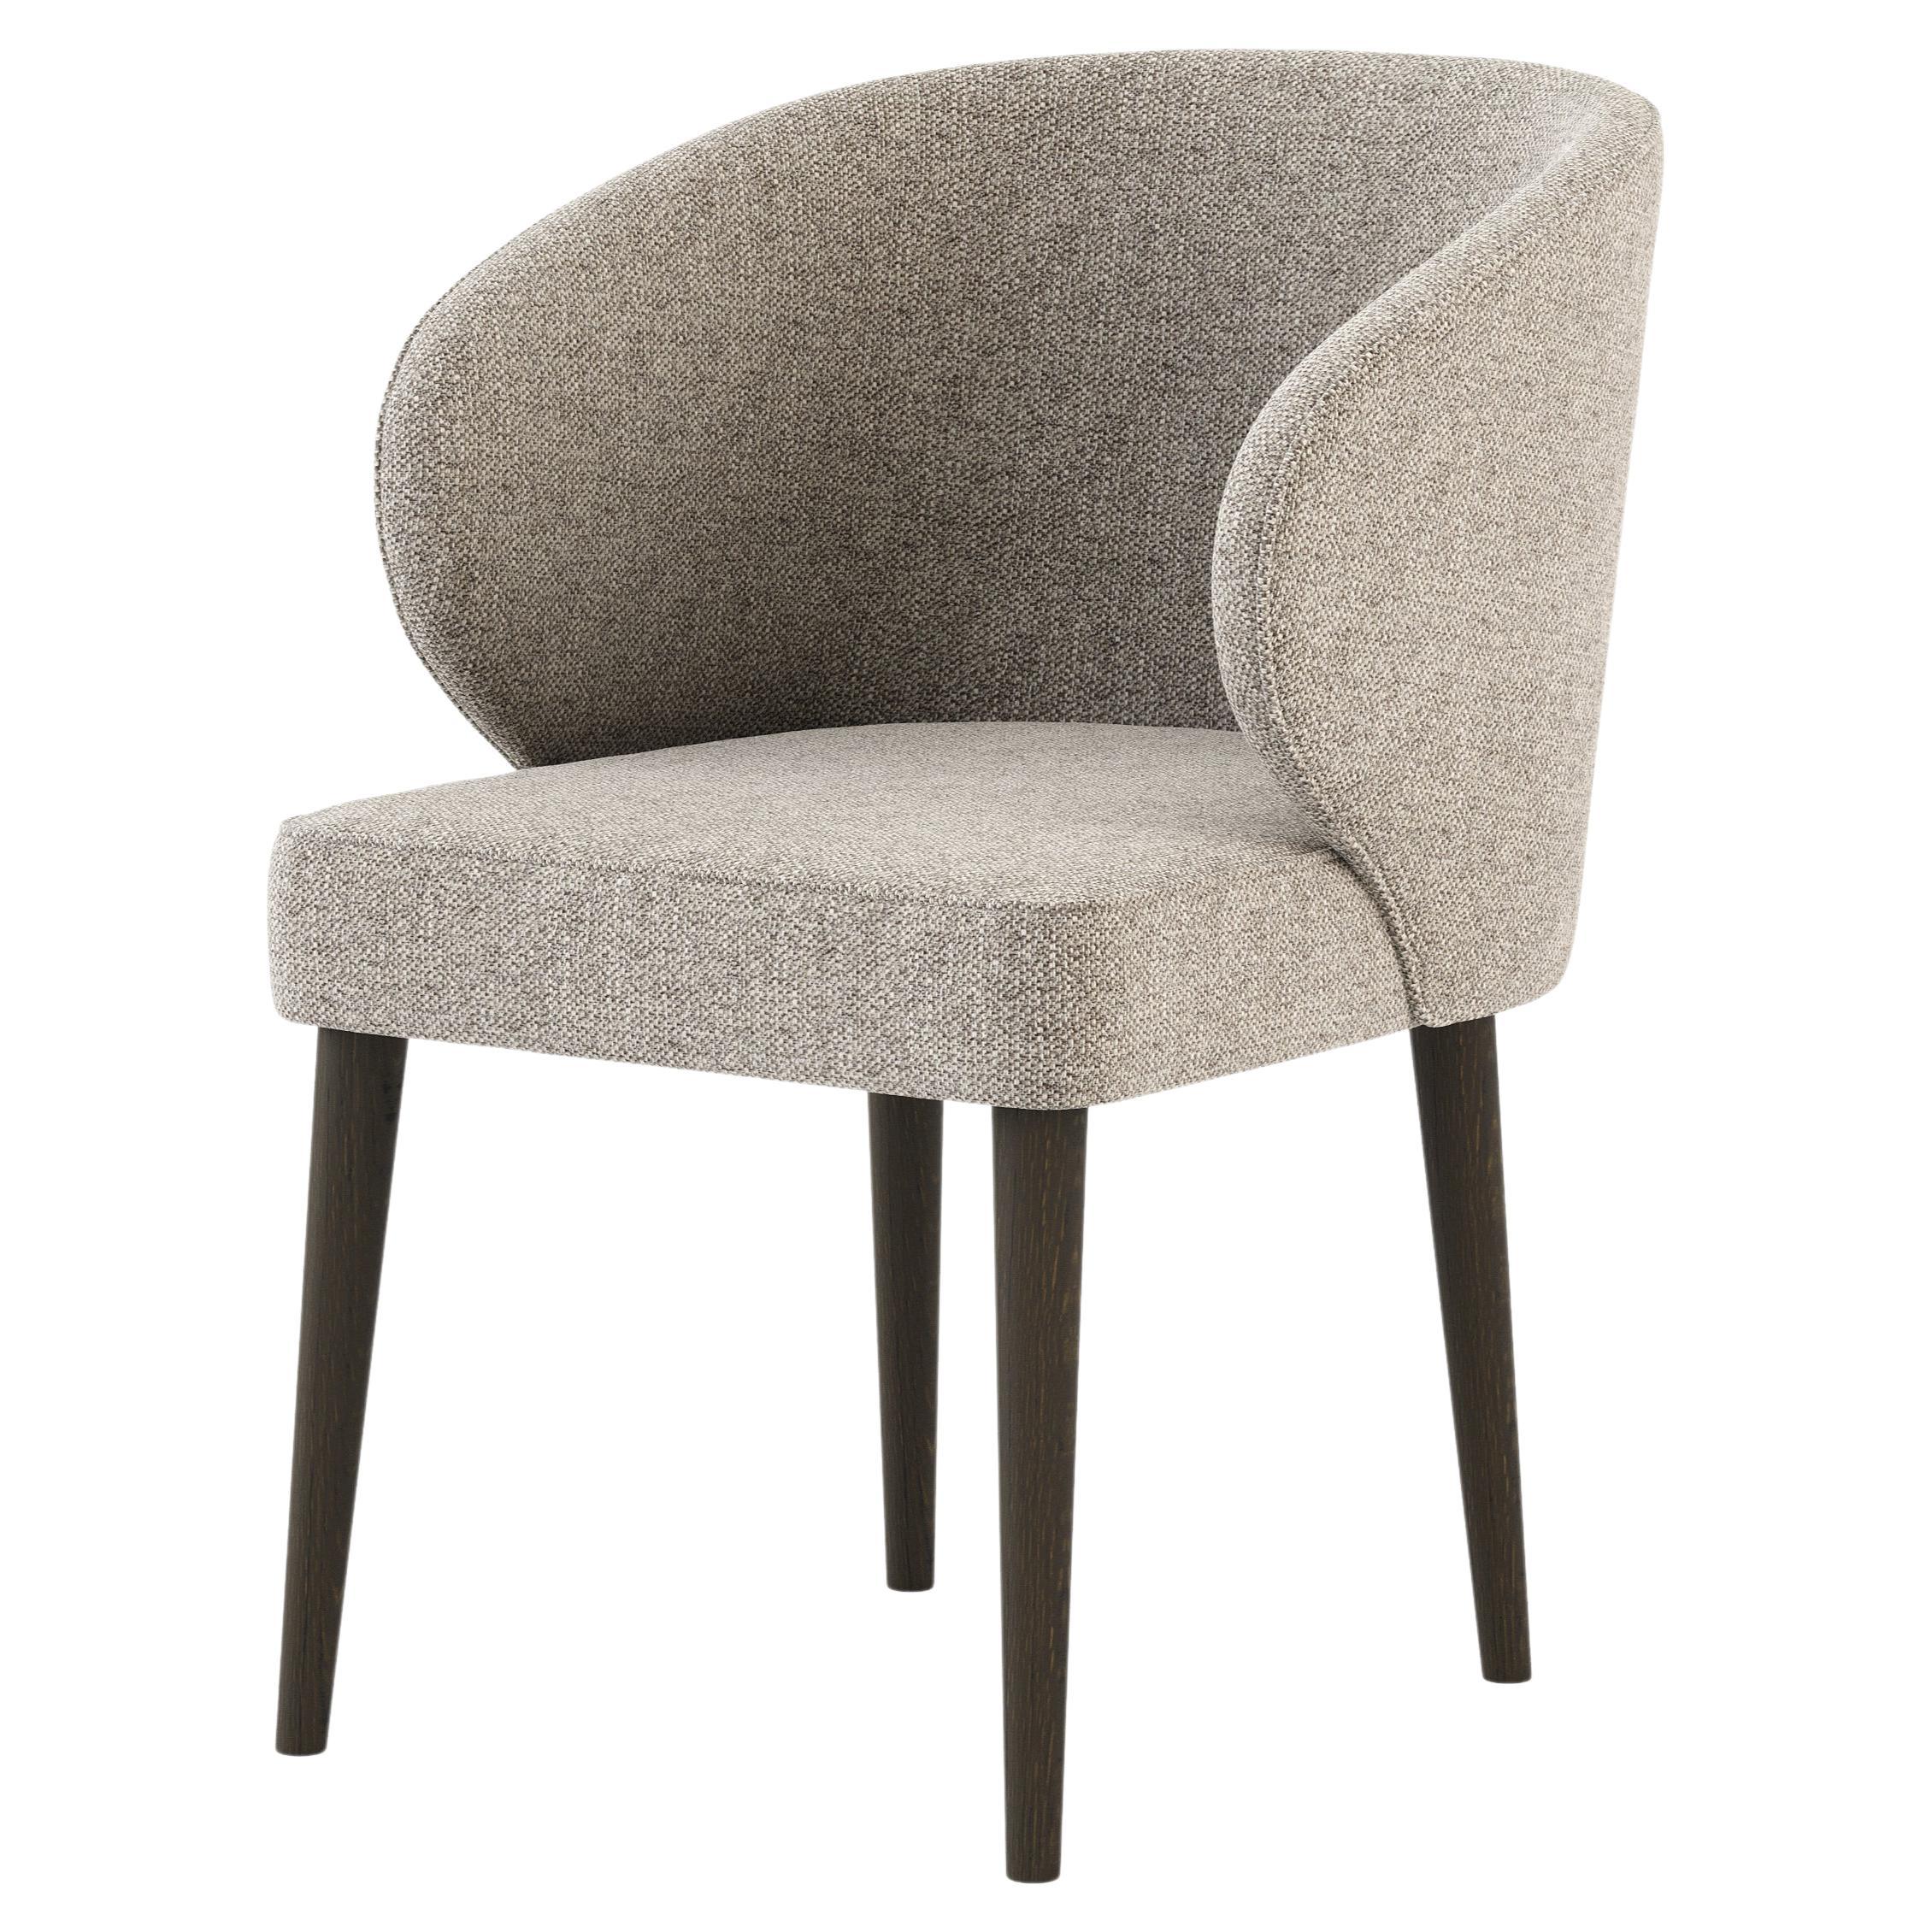 Moderner Fortune-Stuhl aus Eiche und Textilien, handgefertigt von Stylish Club